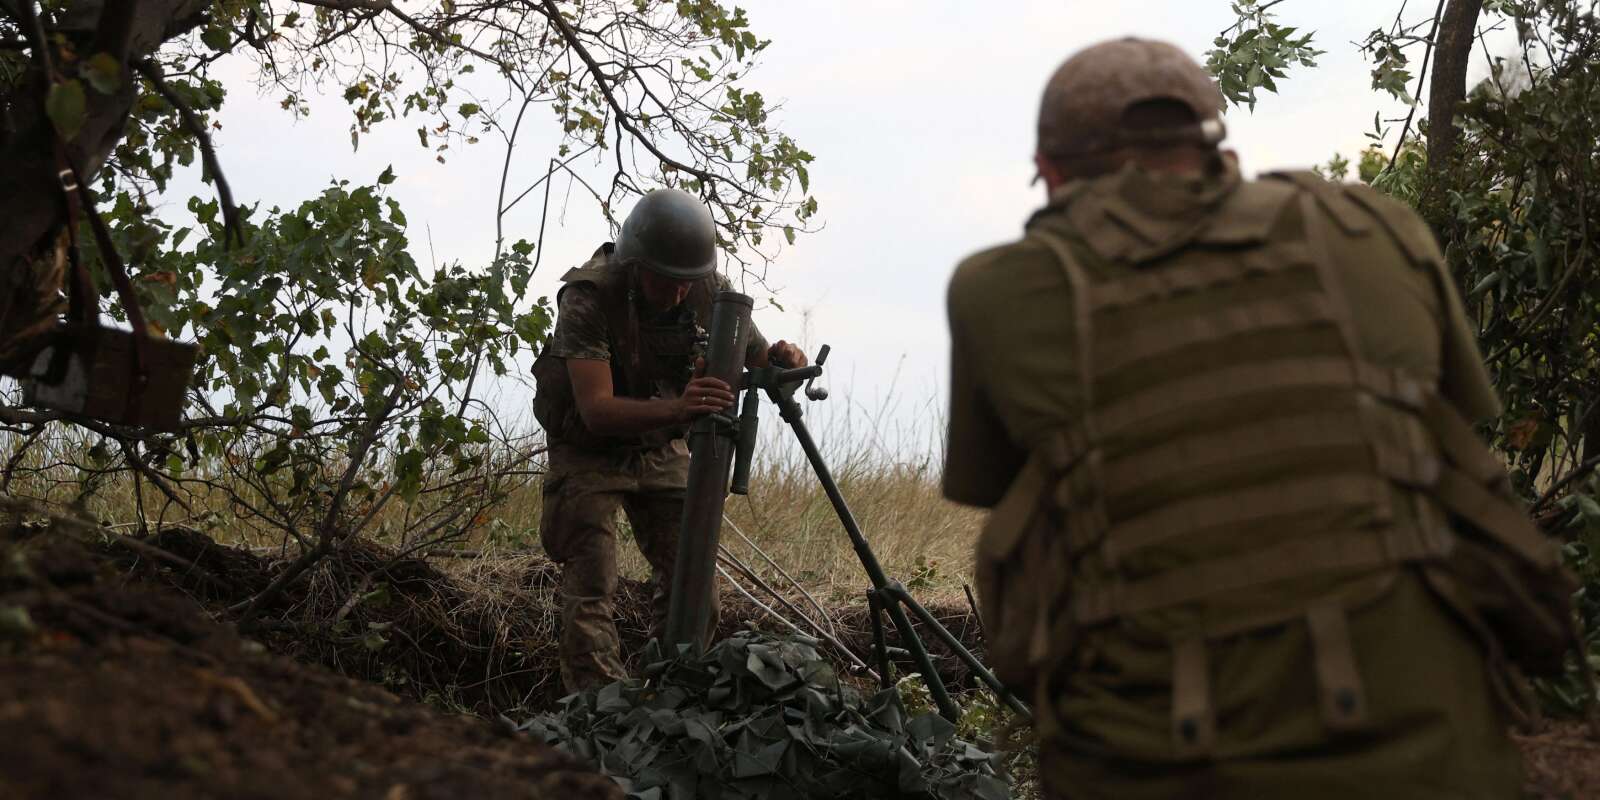 Des soldats ukrainiens se préparent à tirer des obus de mortier sur la ligne de front, dans la région de Donetsk, le 15 août 2022.